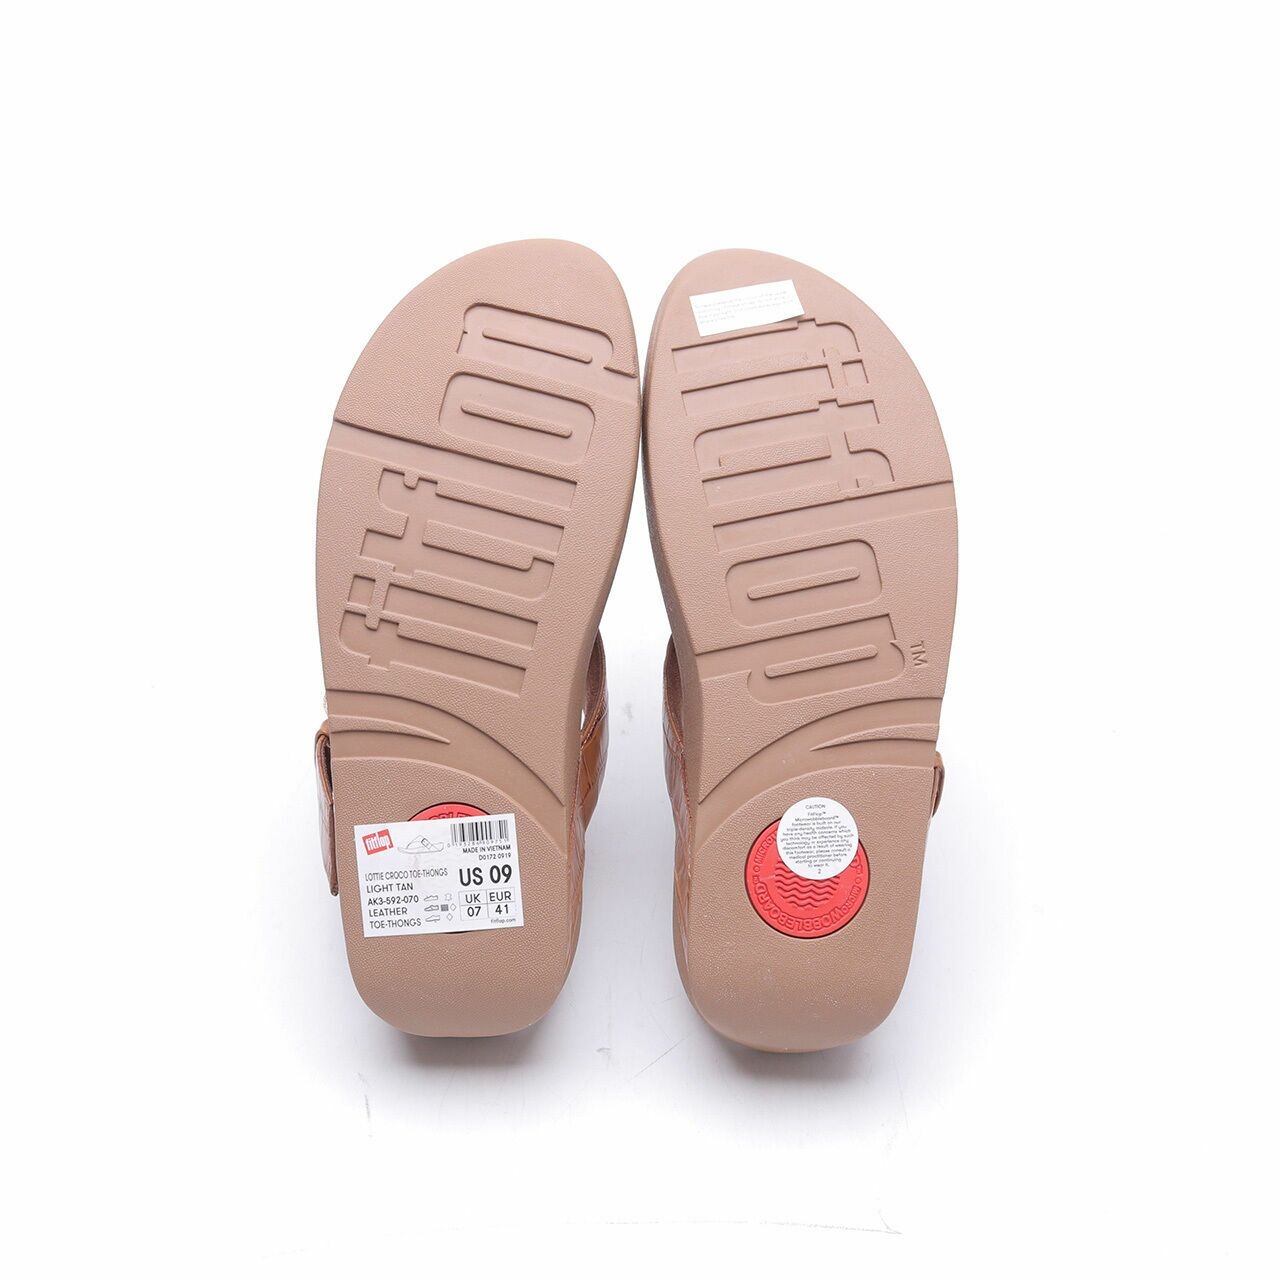 Fitflop Light Tan Lottie Croco Toe-Thongs Sandals